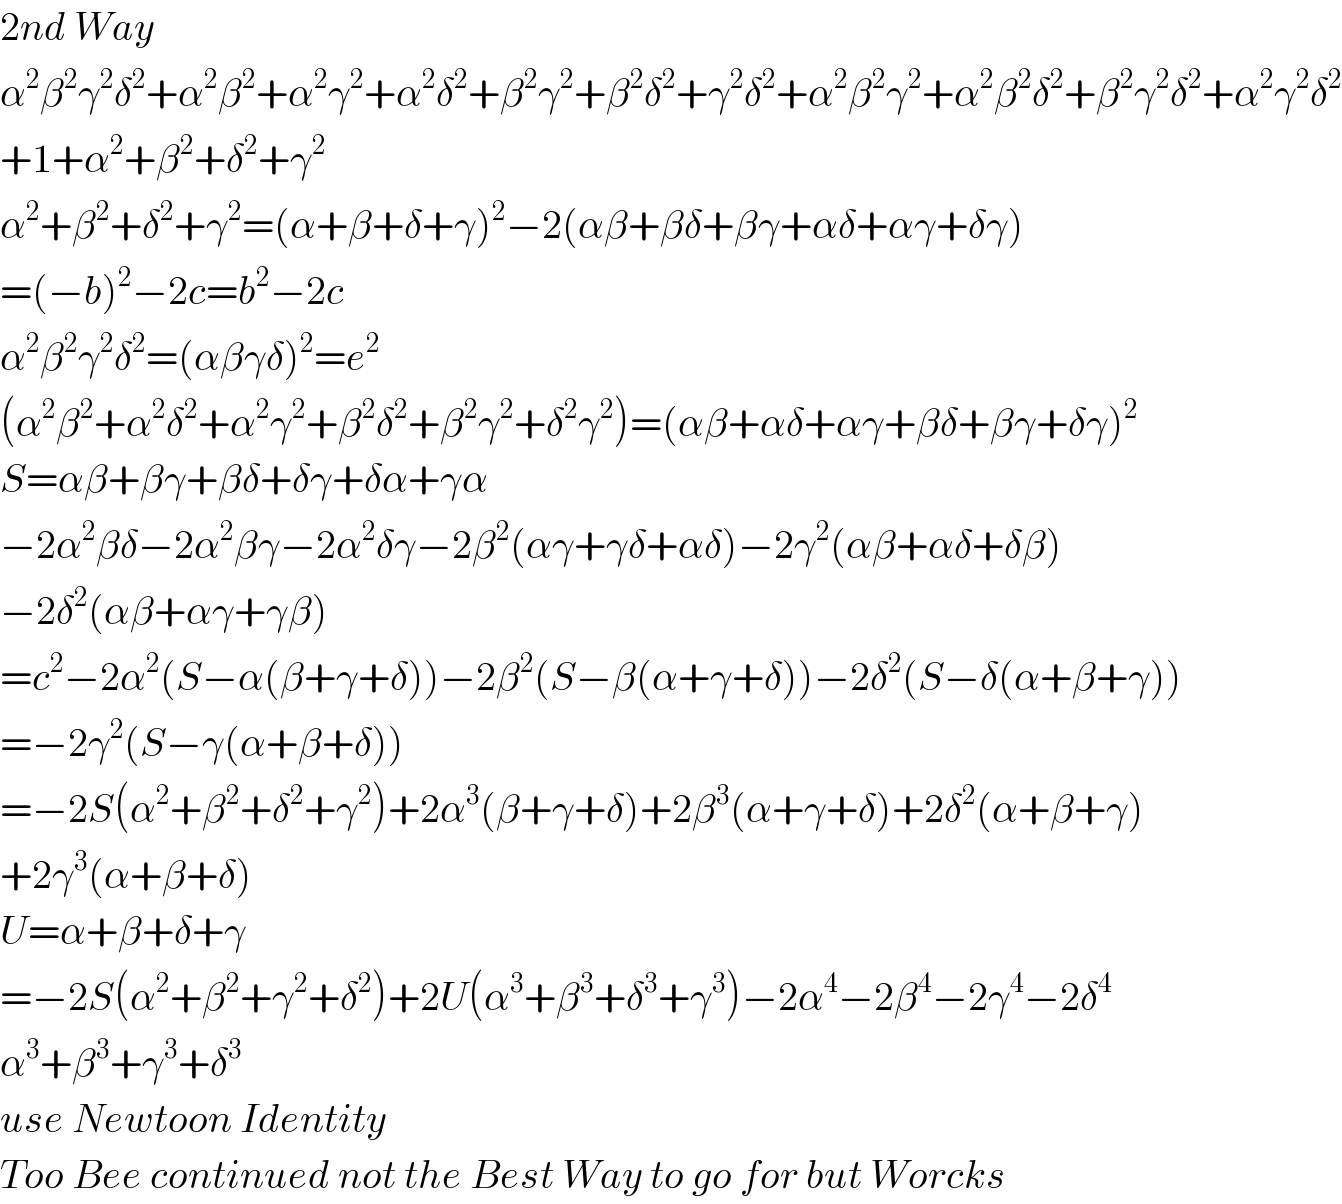 2nd Way  α^2 β^2 γ^2 δ^2 +α^2 β^2 +α^2 γ^2 +α^2 δ^2 +β^2 γ^2 +β^2 δ^2 +γ^2 δ^2 +α^2 β^2 γ^2 +α^2 β^2 δ^2 +β^2 γ^2 δ^2 +α^2 γ^2 δ^2   +1+α^2 +β^2 +δ^2 +γ^2   α^2 +β^2 +δ^2 +γ^2 =(α+β+δ+γ)^2 −2(αβ+βδ+βγ+αδ+αγ+δγ)  =(−b)^2 −2c=b^2 −2c  α^2 β^2 γ^2 δ^2 =(αβγδ)^2 =e^2   (α^2 β^2 +α^2 δ^2 +α^2 γ^2 +β^2 δ^2 +β^2 γ^2 +δ^2 γ^2 )=(αβ+αδ+αγ+βδ+βγ+δγ)^2   S=αβ+βγ+βδ+δγ+δα+γα  −2α^2 βδ−2α^2 βγ−2α^2 δγ−2β^2 (αγ+γδ+αδ)−2γ^2 (αβ+αδ+δβ)  −2δ^2 (αβ+αγ+γβ)  =c^2 −2α^2 (S−α(β+γ+δ))−2β^2 (S−β(α+γ+δ))−2δ^2 (S−δ(α+β+γ))  =−2γ^2 (S−γ(α+β+δ))  =−2S(α^2 +β^2 +δ^2 +γ^2 )+2α^3 (β+γ+δ)+2β^3 (α+γ+δ)+2δ^2 (α+β+γ)  +2γ^3 (α+β+δ)  U=α+β+δ+γ  =−2S(α^2 +β^2 +γ^2 +δ^2 )+2U(α^3 +β^3 +δ^3 +γ^3 )−2α^4 −2β^4 −2γ^4 −2δ^4   α^3 +β^3 +γ^3 +δ^3   use Newtoon Identity  Too Bee continued not the Best Way to go for but Worcks  